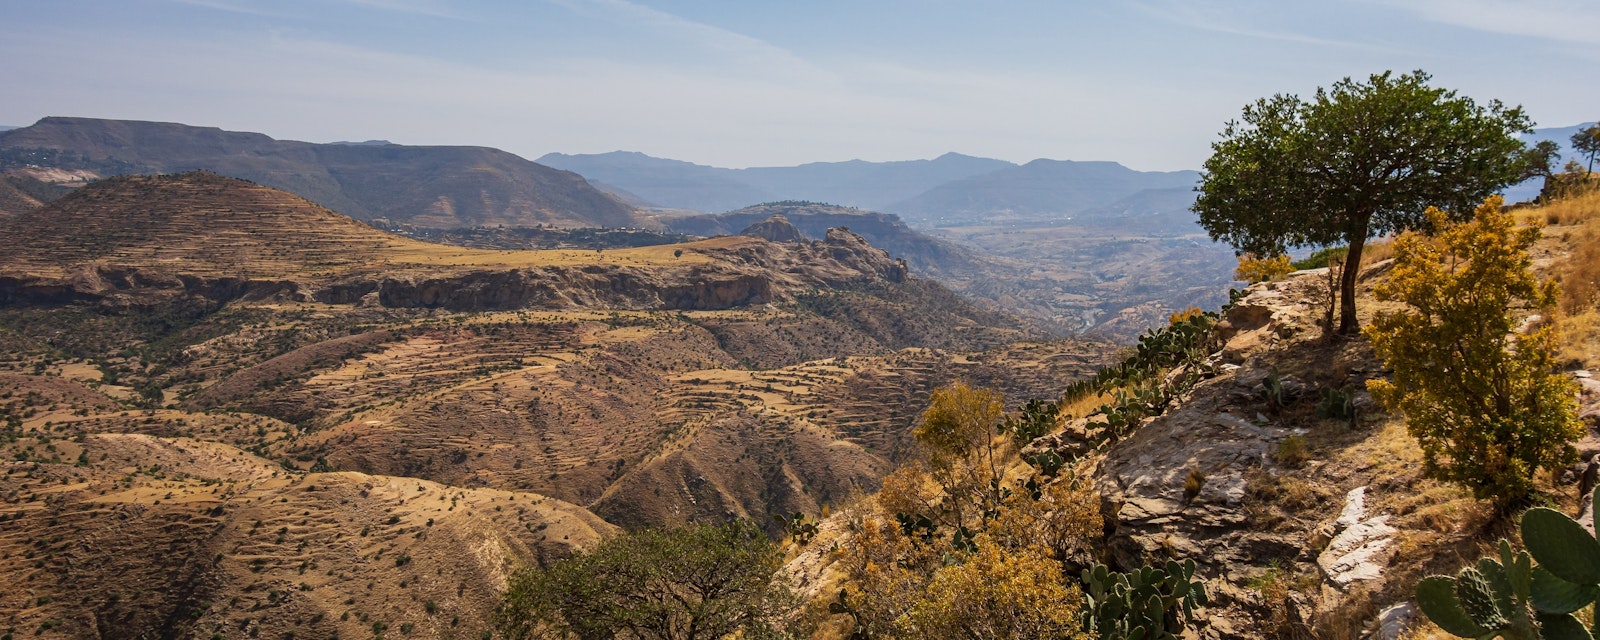 View,From,Debre,Damo,Montain,In,Tigray,Region,,Ethiopia.